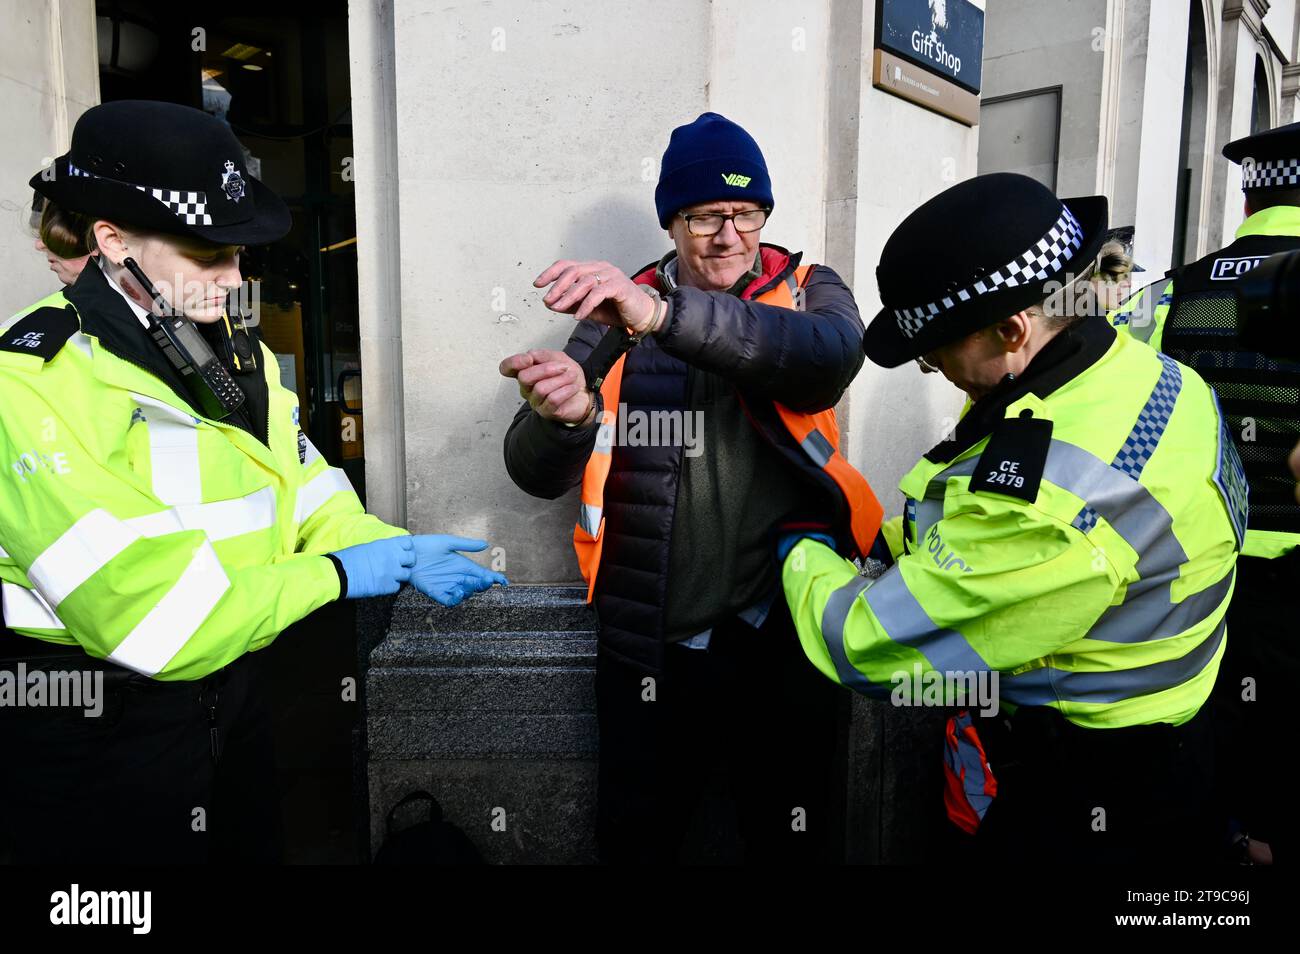 Londres, Royaume-Uni. Quatre personnes portant des bannières Just Stop Oil ont été arrêtées à Whitehall quand elles ont quitté le trottoir pour rejoindre la route. Les acteurs et les universitaires ont critiqué la «folie» climatique du gouvernement britannique et les limites à la protestation. Crédit : michael melia/Alamy Live News Banque D'Images